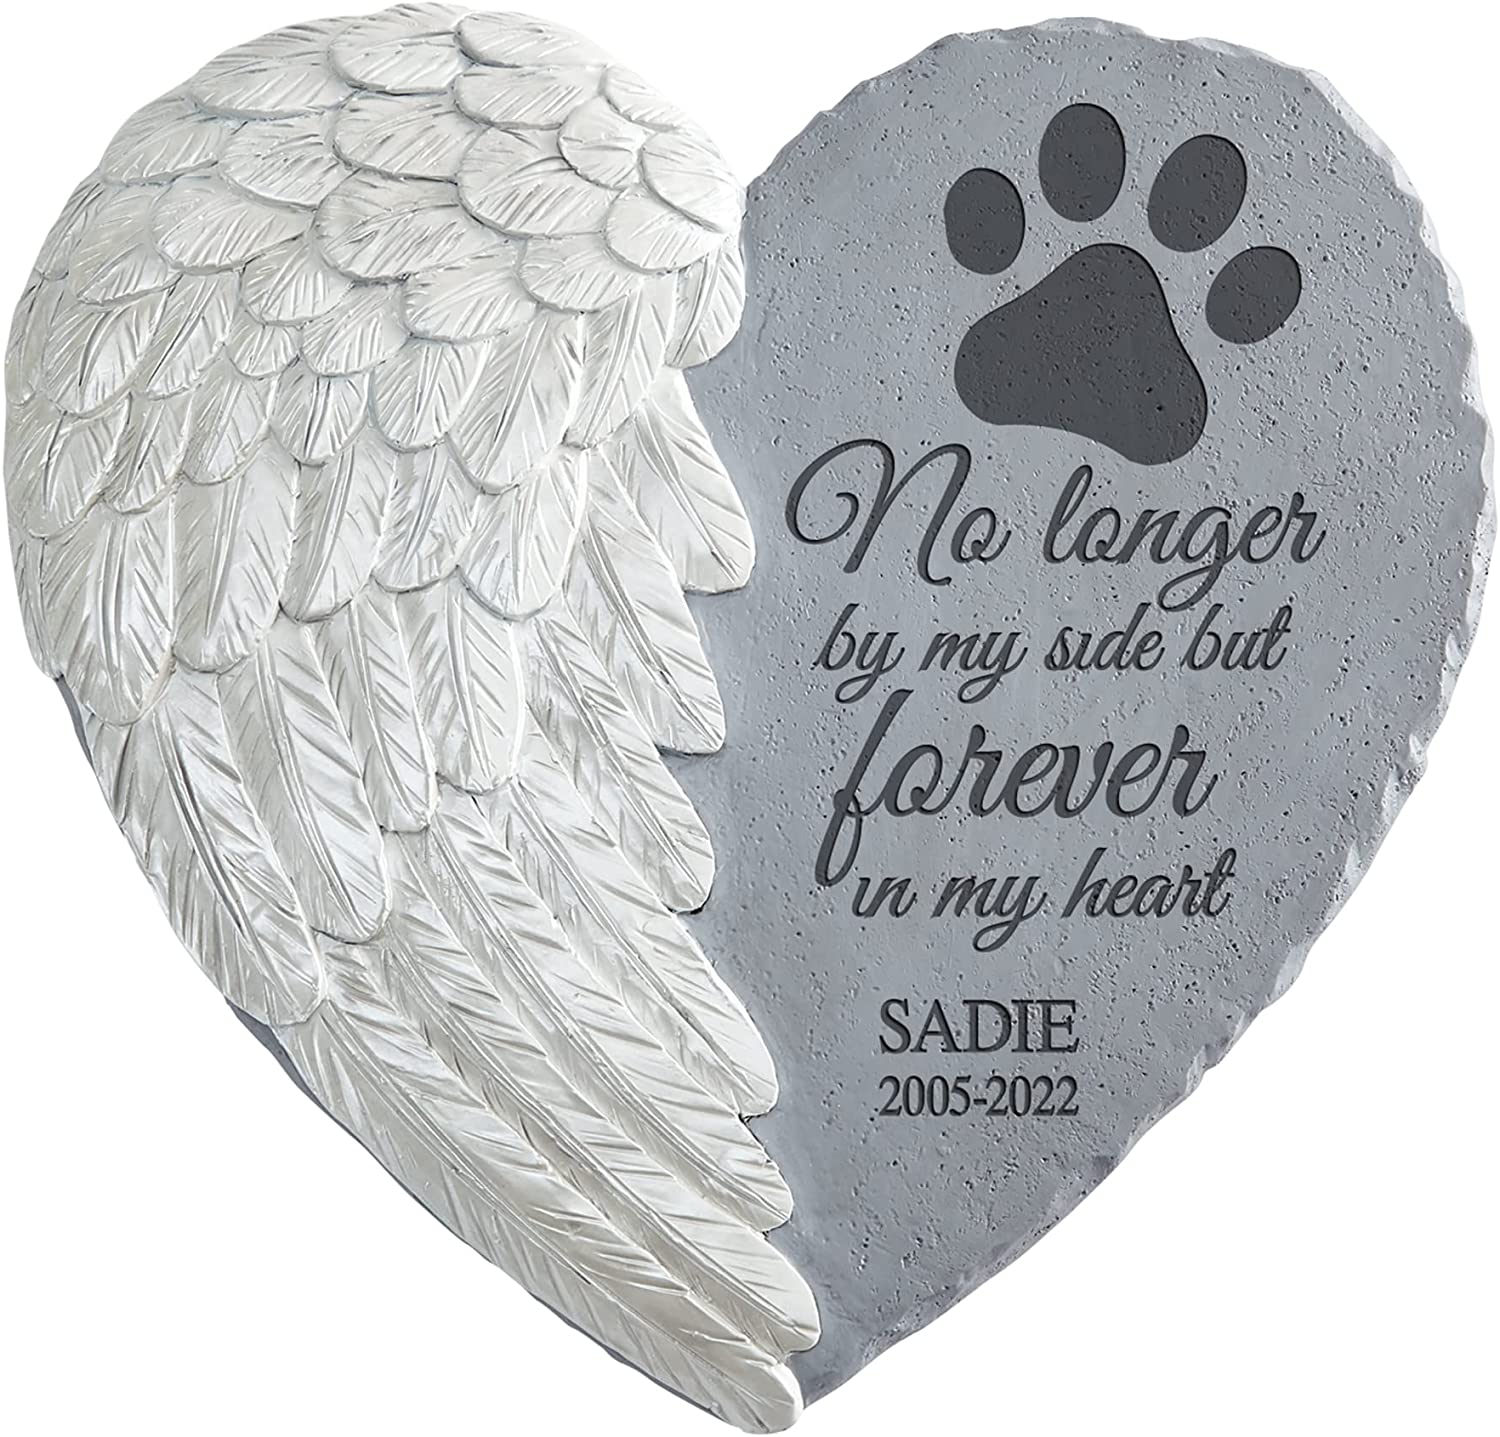 Pet Loss Gift Pet Memorial Angel Wing Print Dog Memorial 